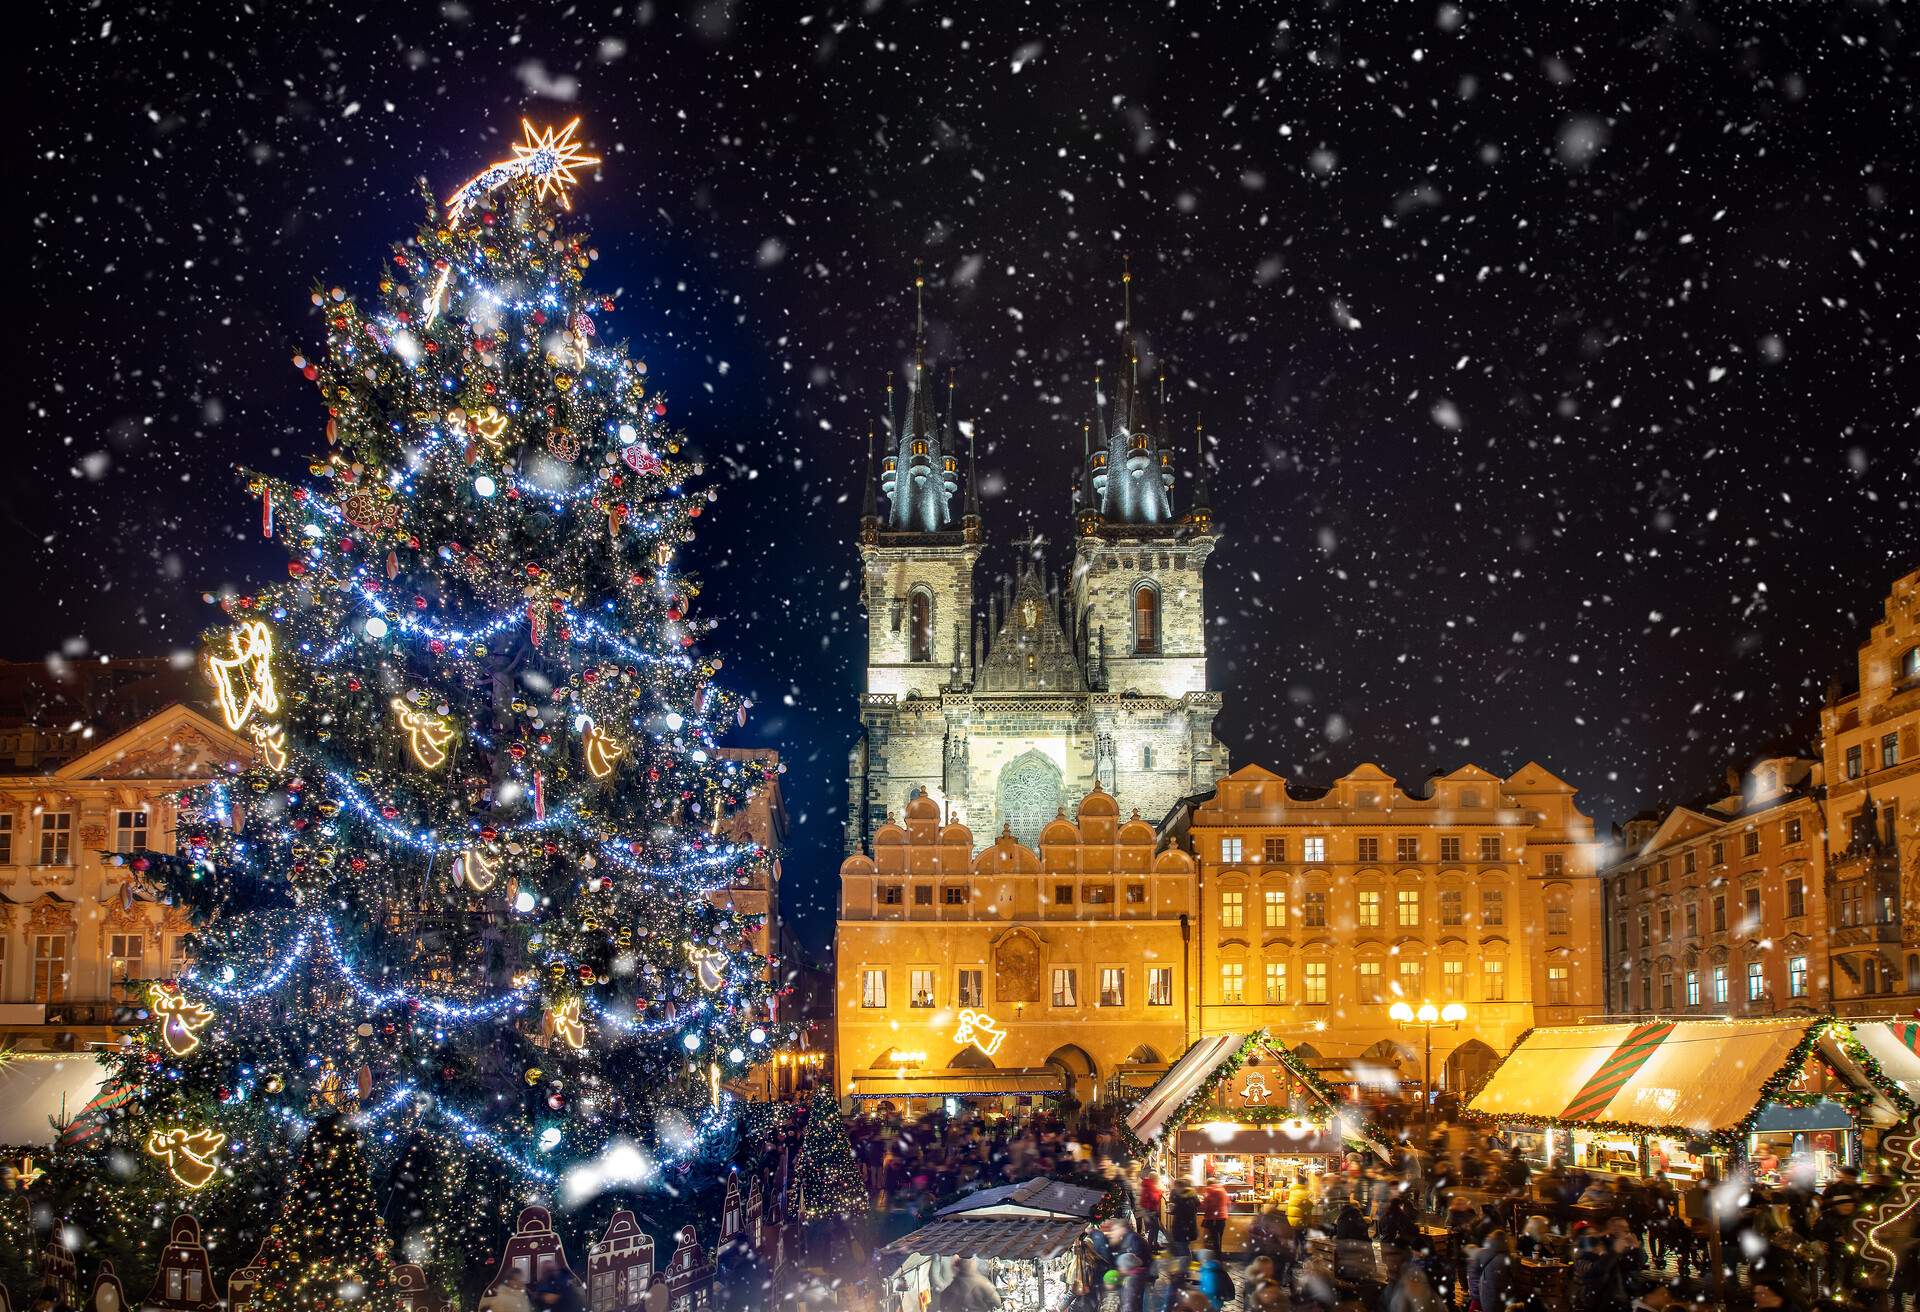 CZECH_REPUBLIC_PRAGUE_OLD_TOWN_SQUARE_CHRISTMAS_MARKET